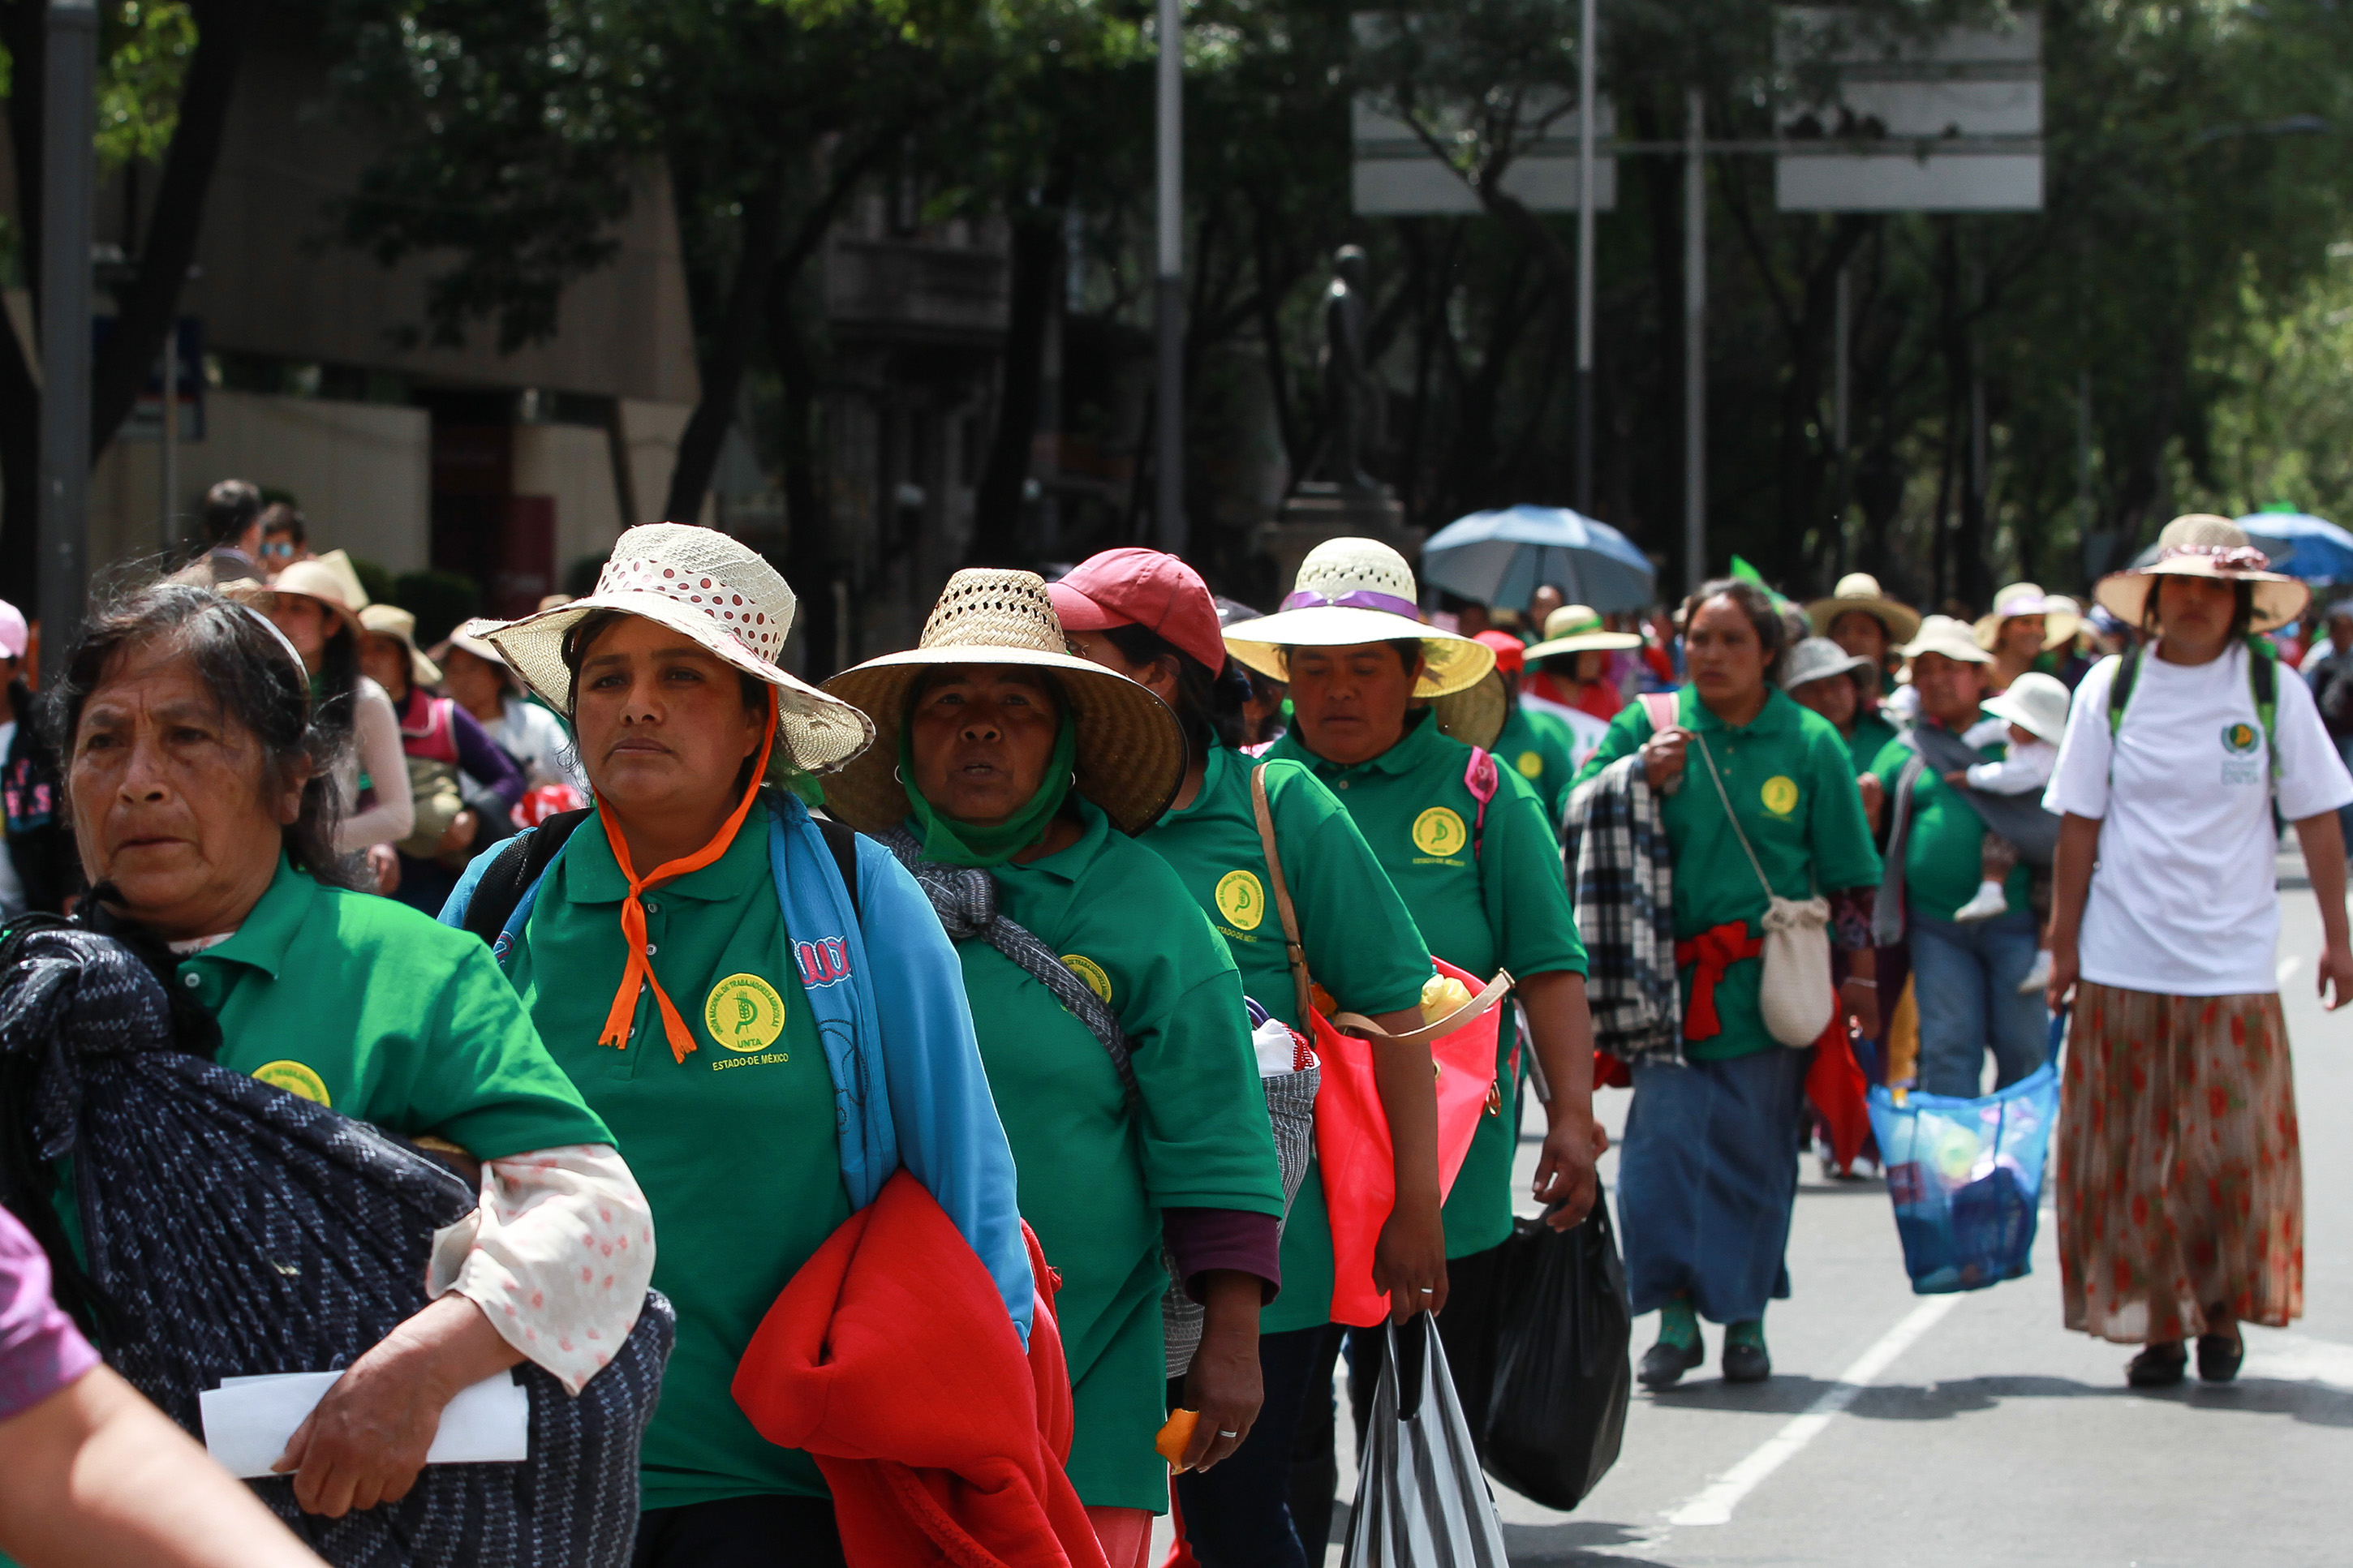 Procedentes de Ecatepec, Texcoco, Nezahualcóyolt, Jilotepec, Cuajemalpa y Xochimilco, las caravanas campesinas ingresaron a la Ciudad de México.